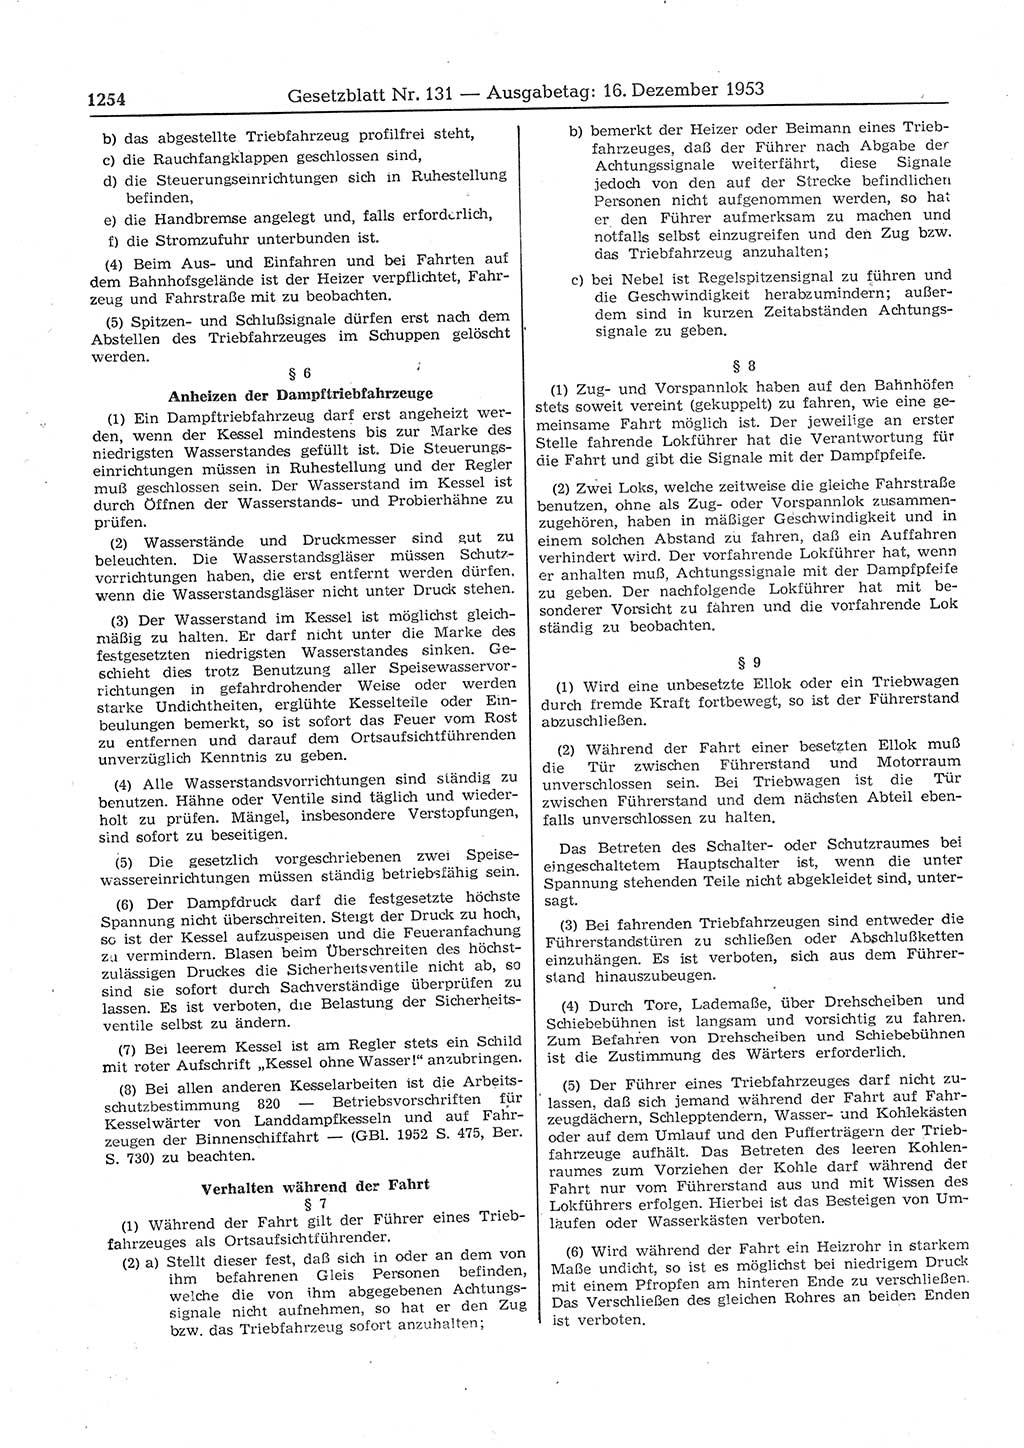 Gesetzblatt (GBl.) der Deutschen Demokratischen Republik (DDR) 1953, Seite 1254 (GBl. DDR 1953, S. 1254)